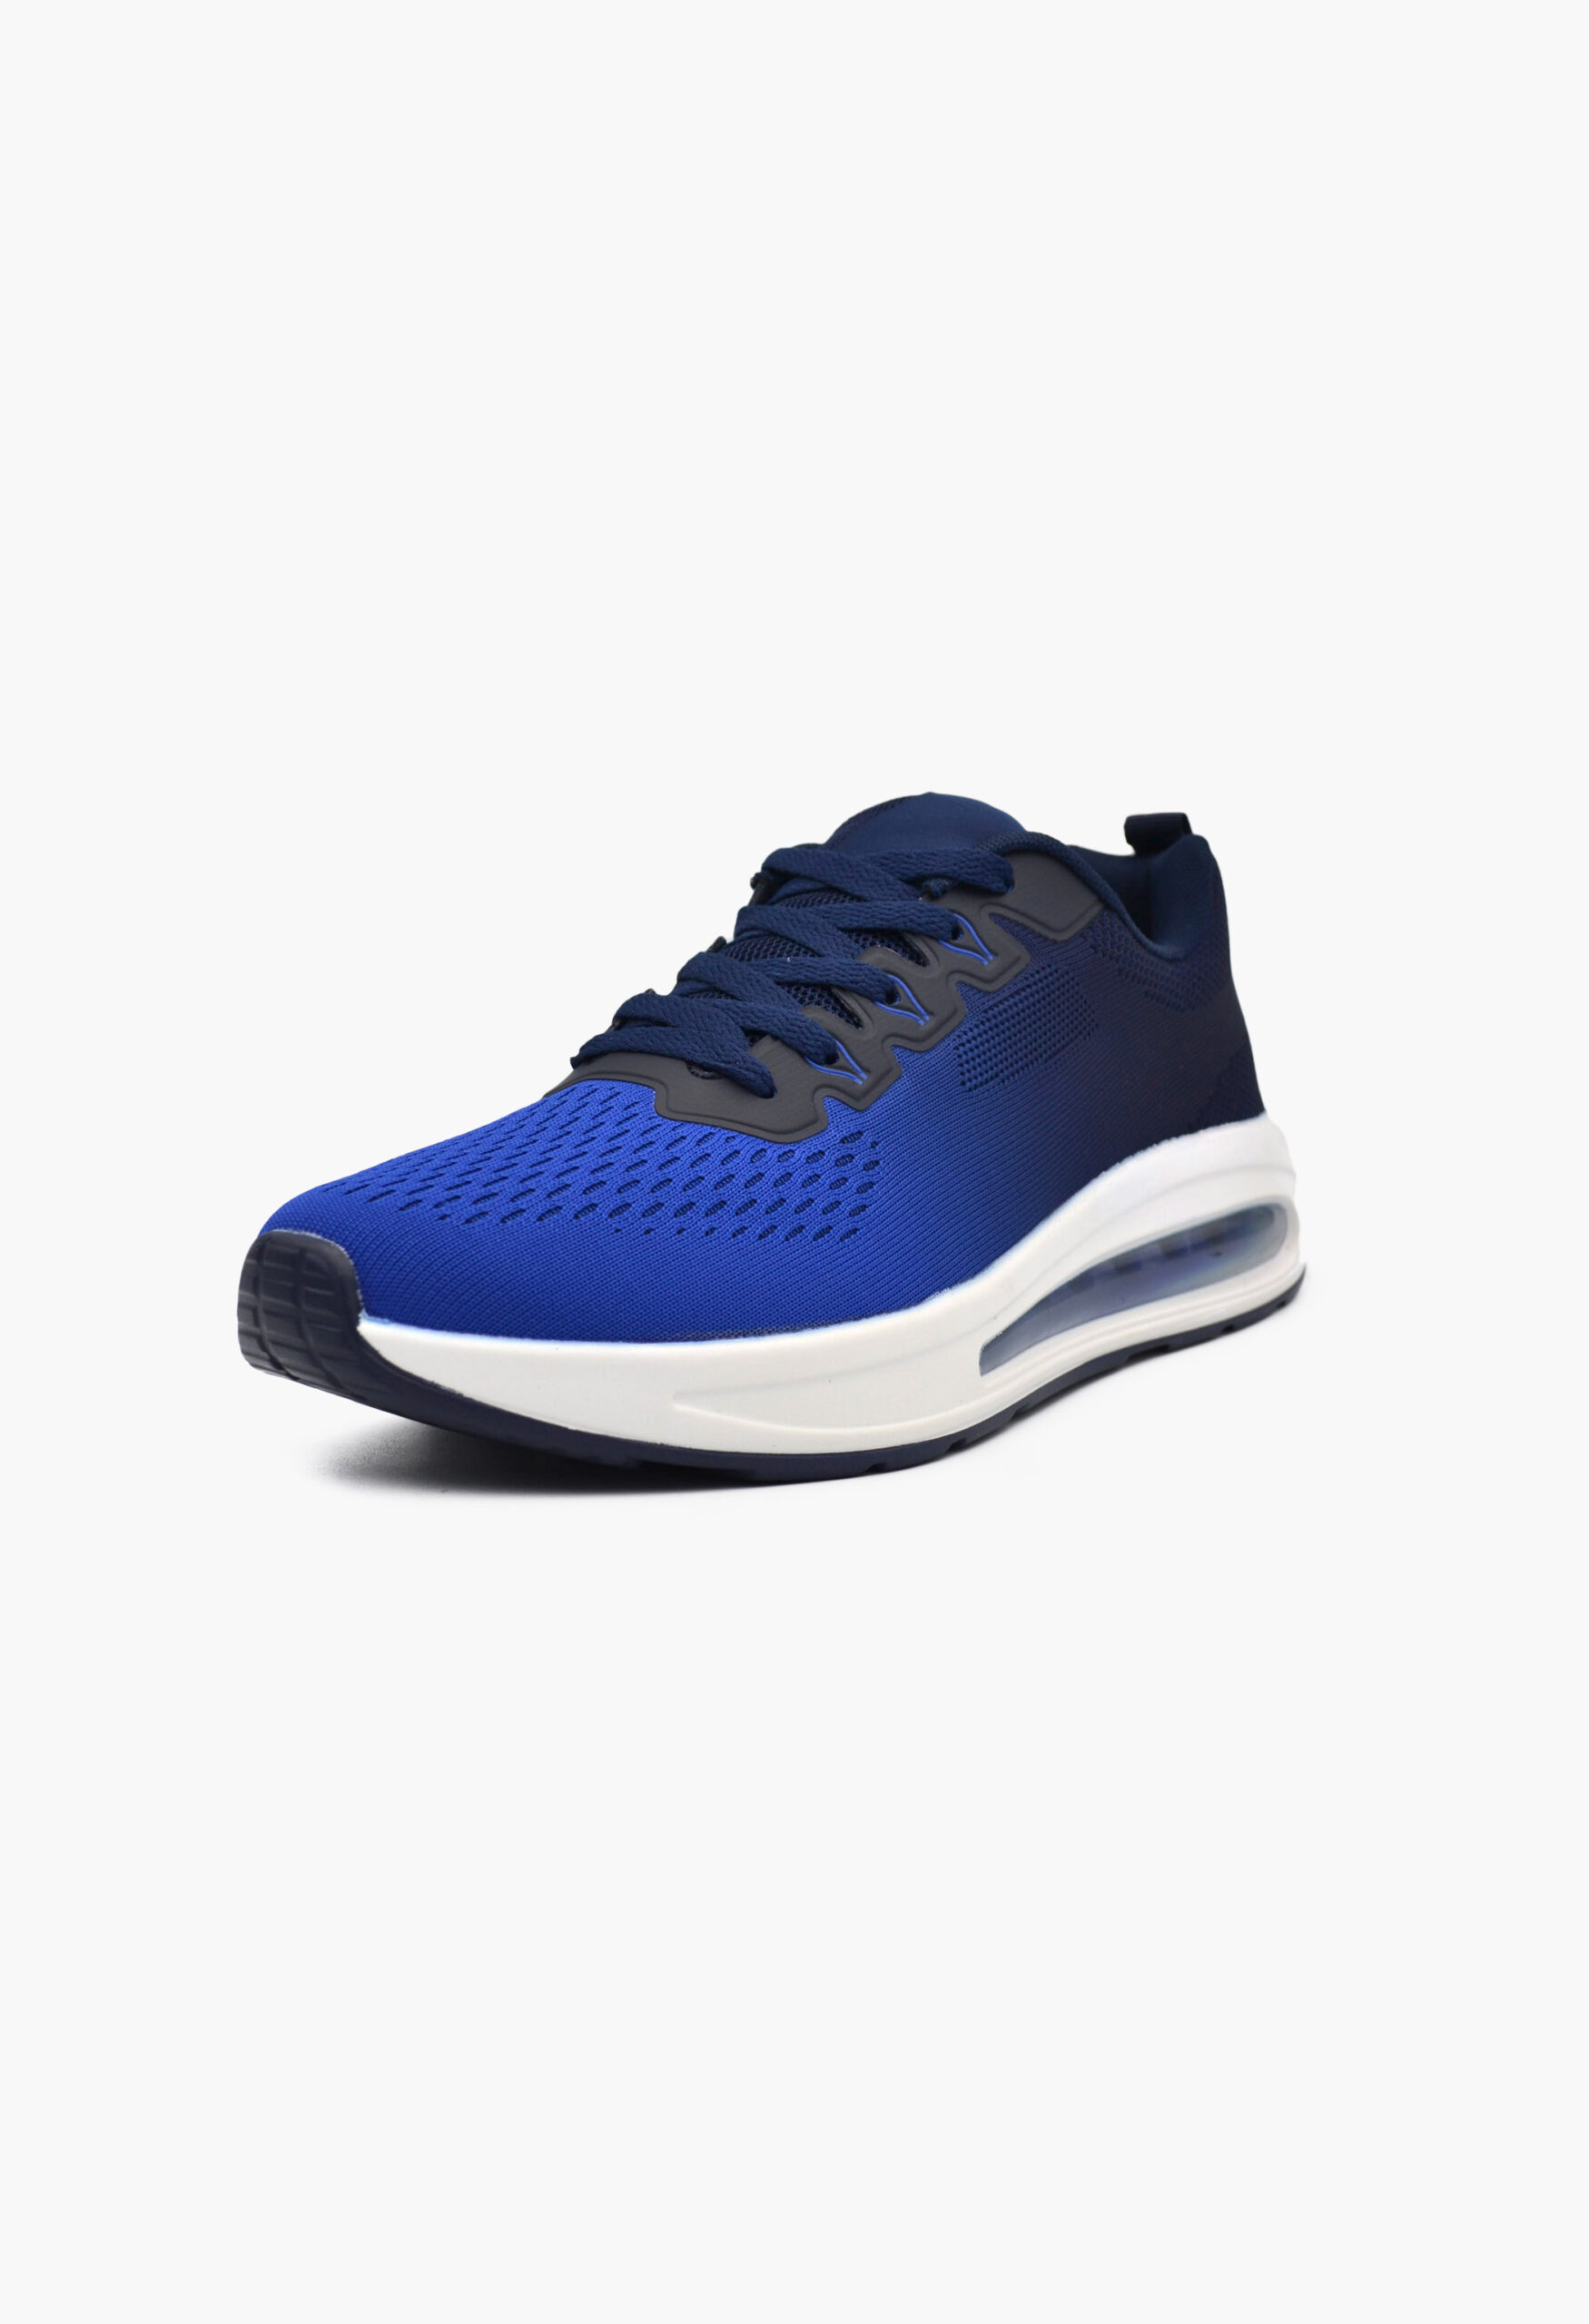 Ανδρικά Αθλητικά Παπούτσια για Τρέξιμο Μπλε / U1227-10-blue/navy ΑΘΛΗΤΙΚΑ & SNEAKERS joya.gr